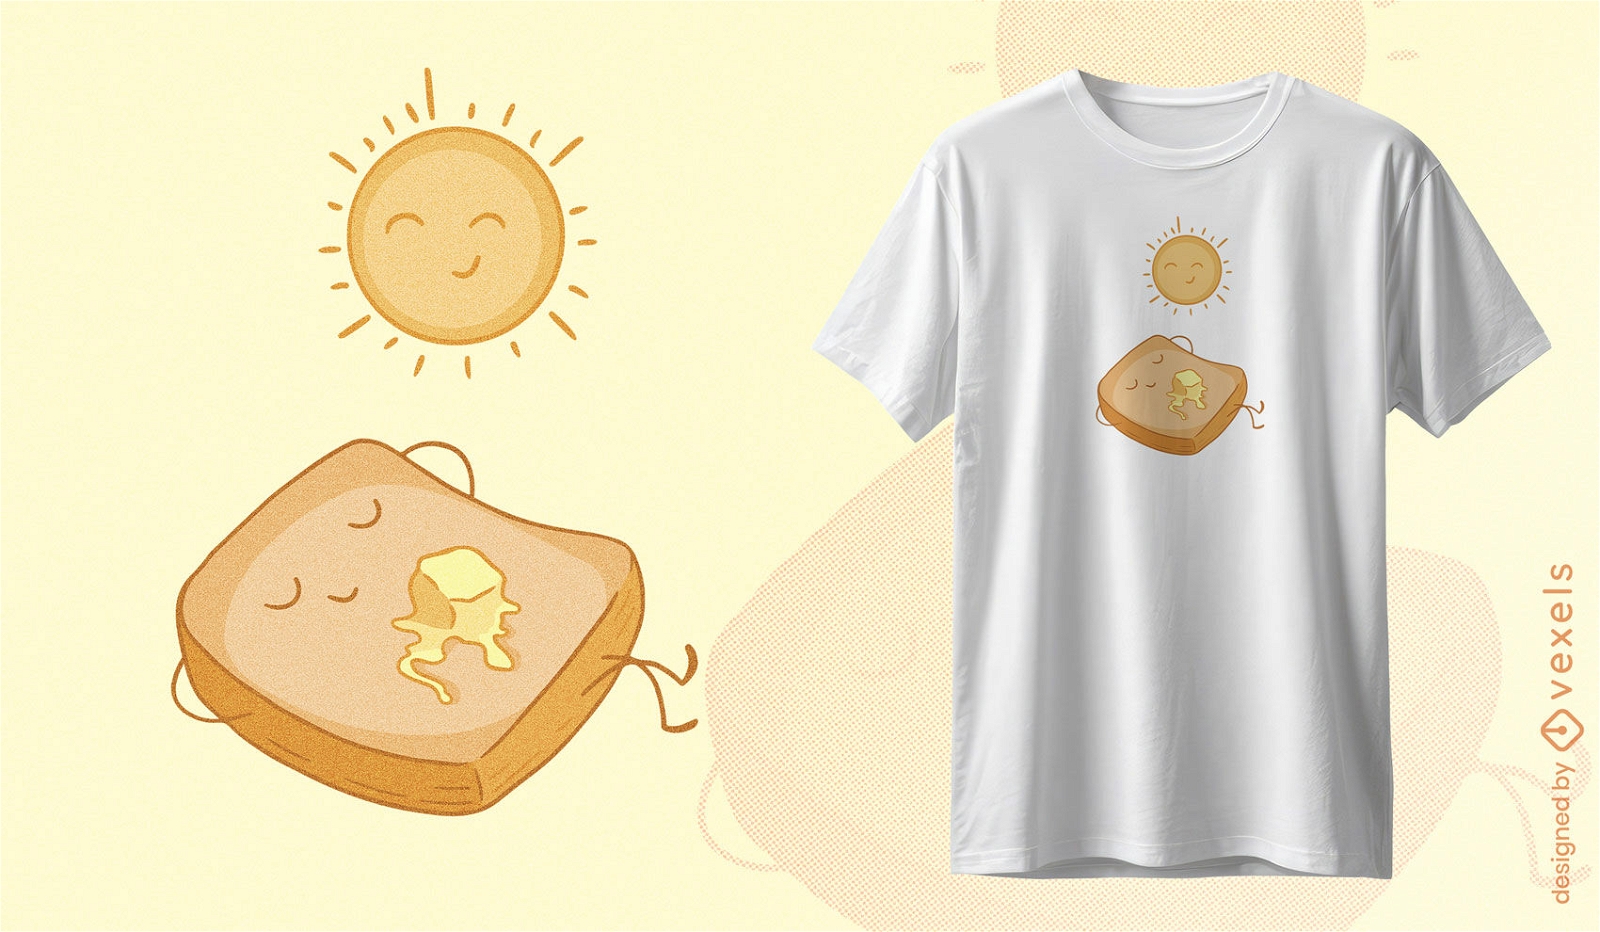 Dise?o de camiseta de personajes de tostadas y sol.